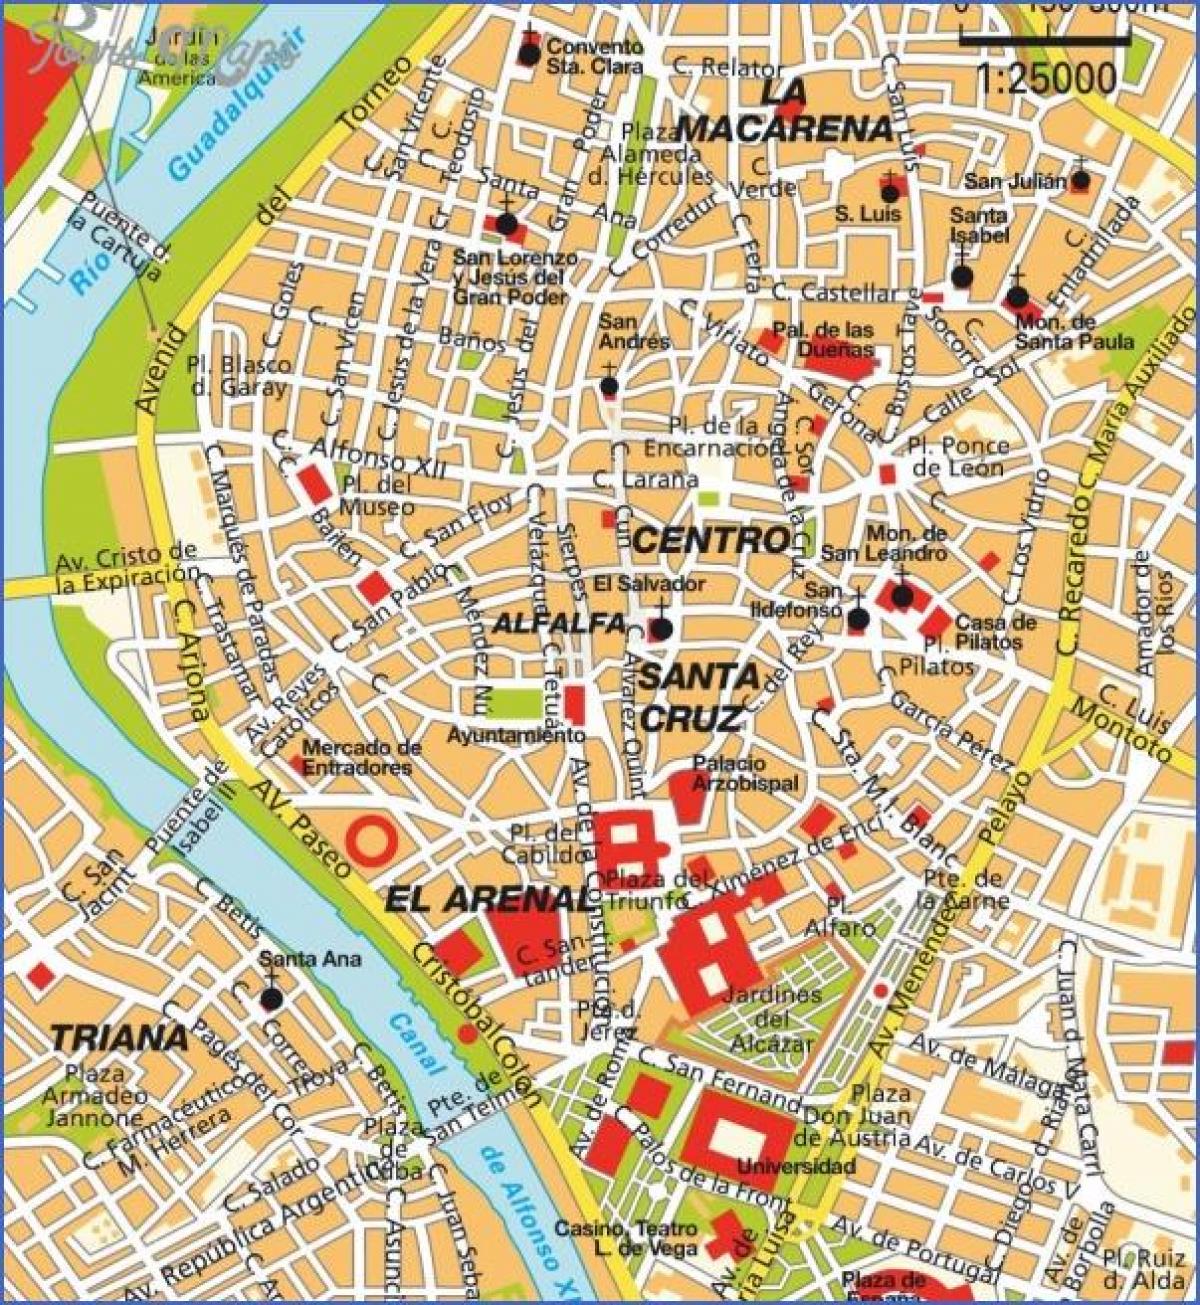 Seville (espagne) carte des attractions touristiques